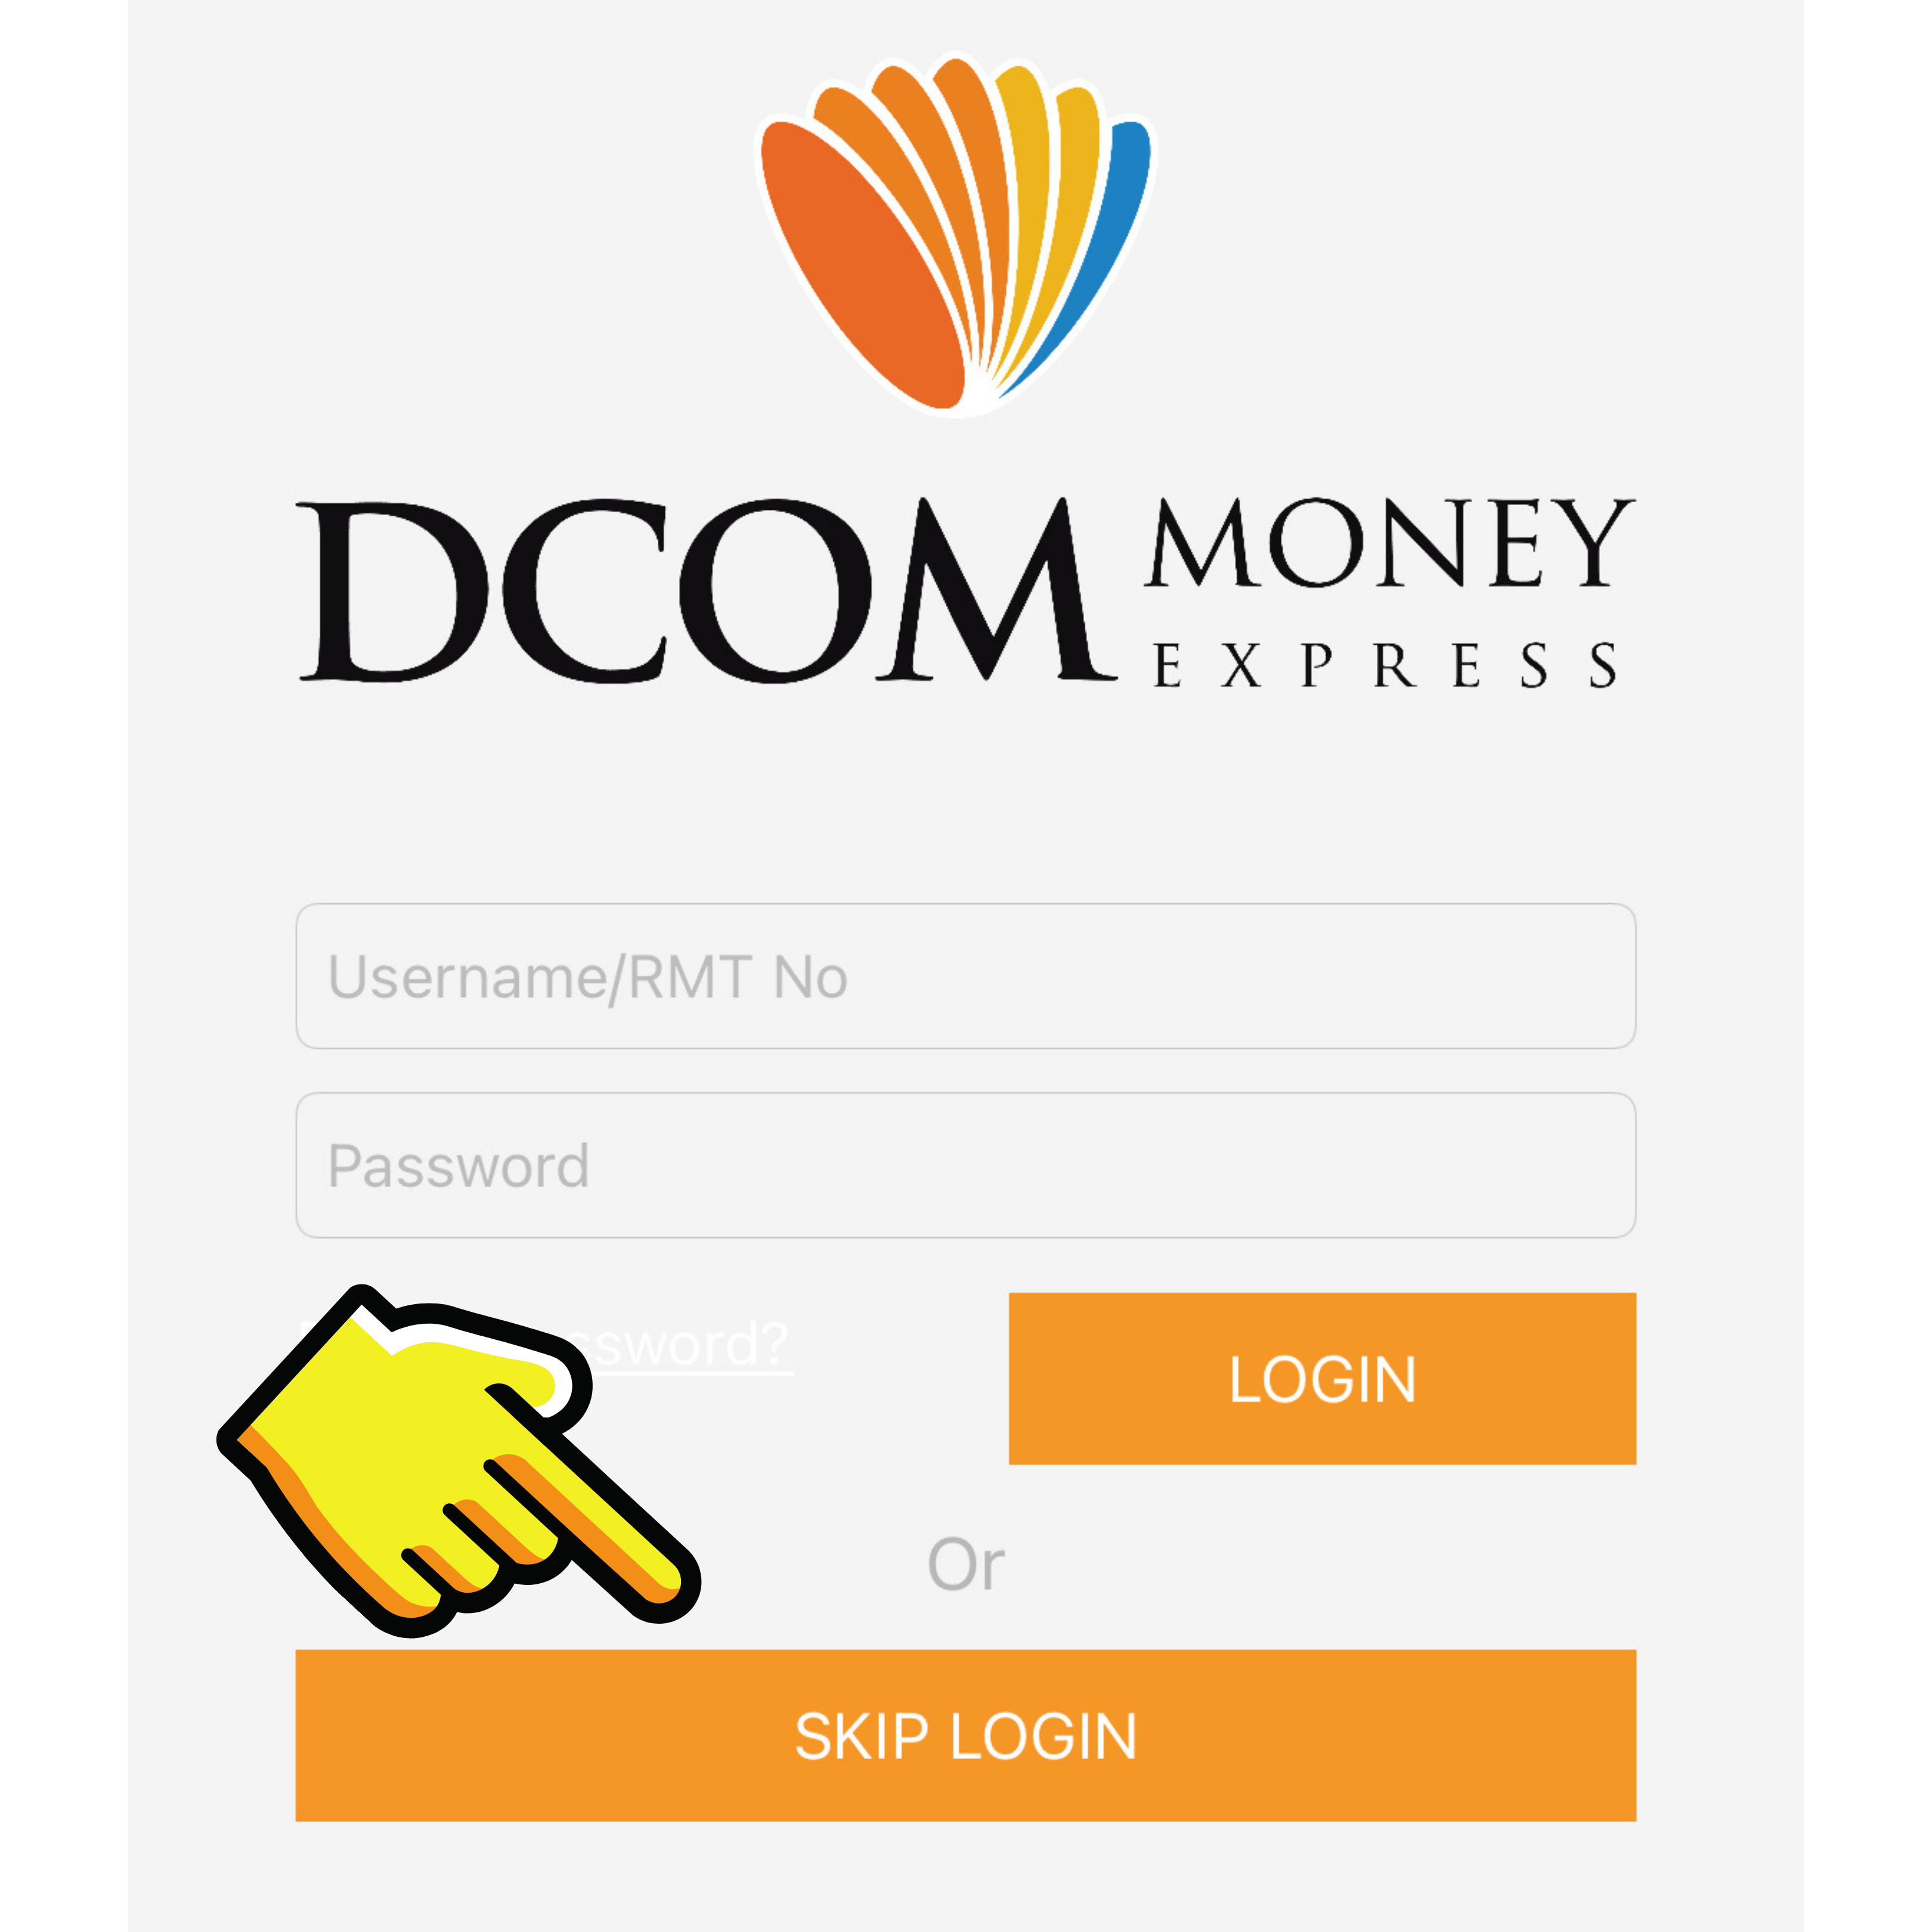 DCOM App - Skip login to register